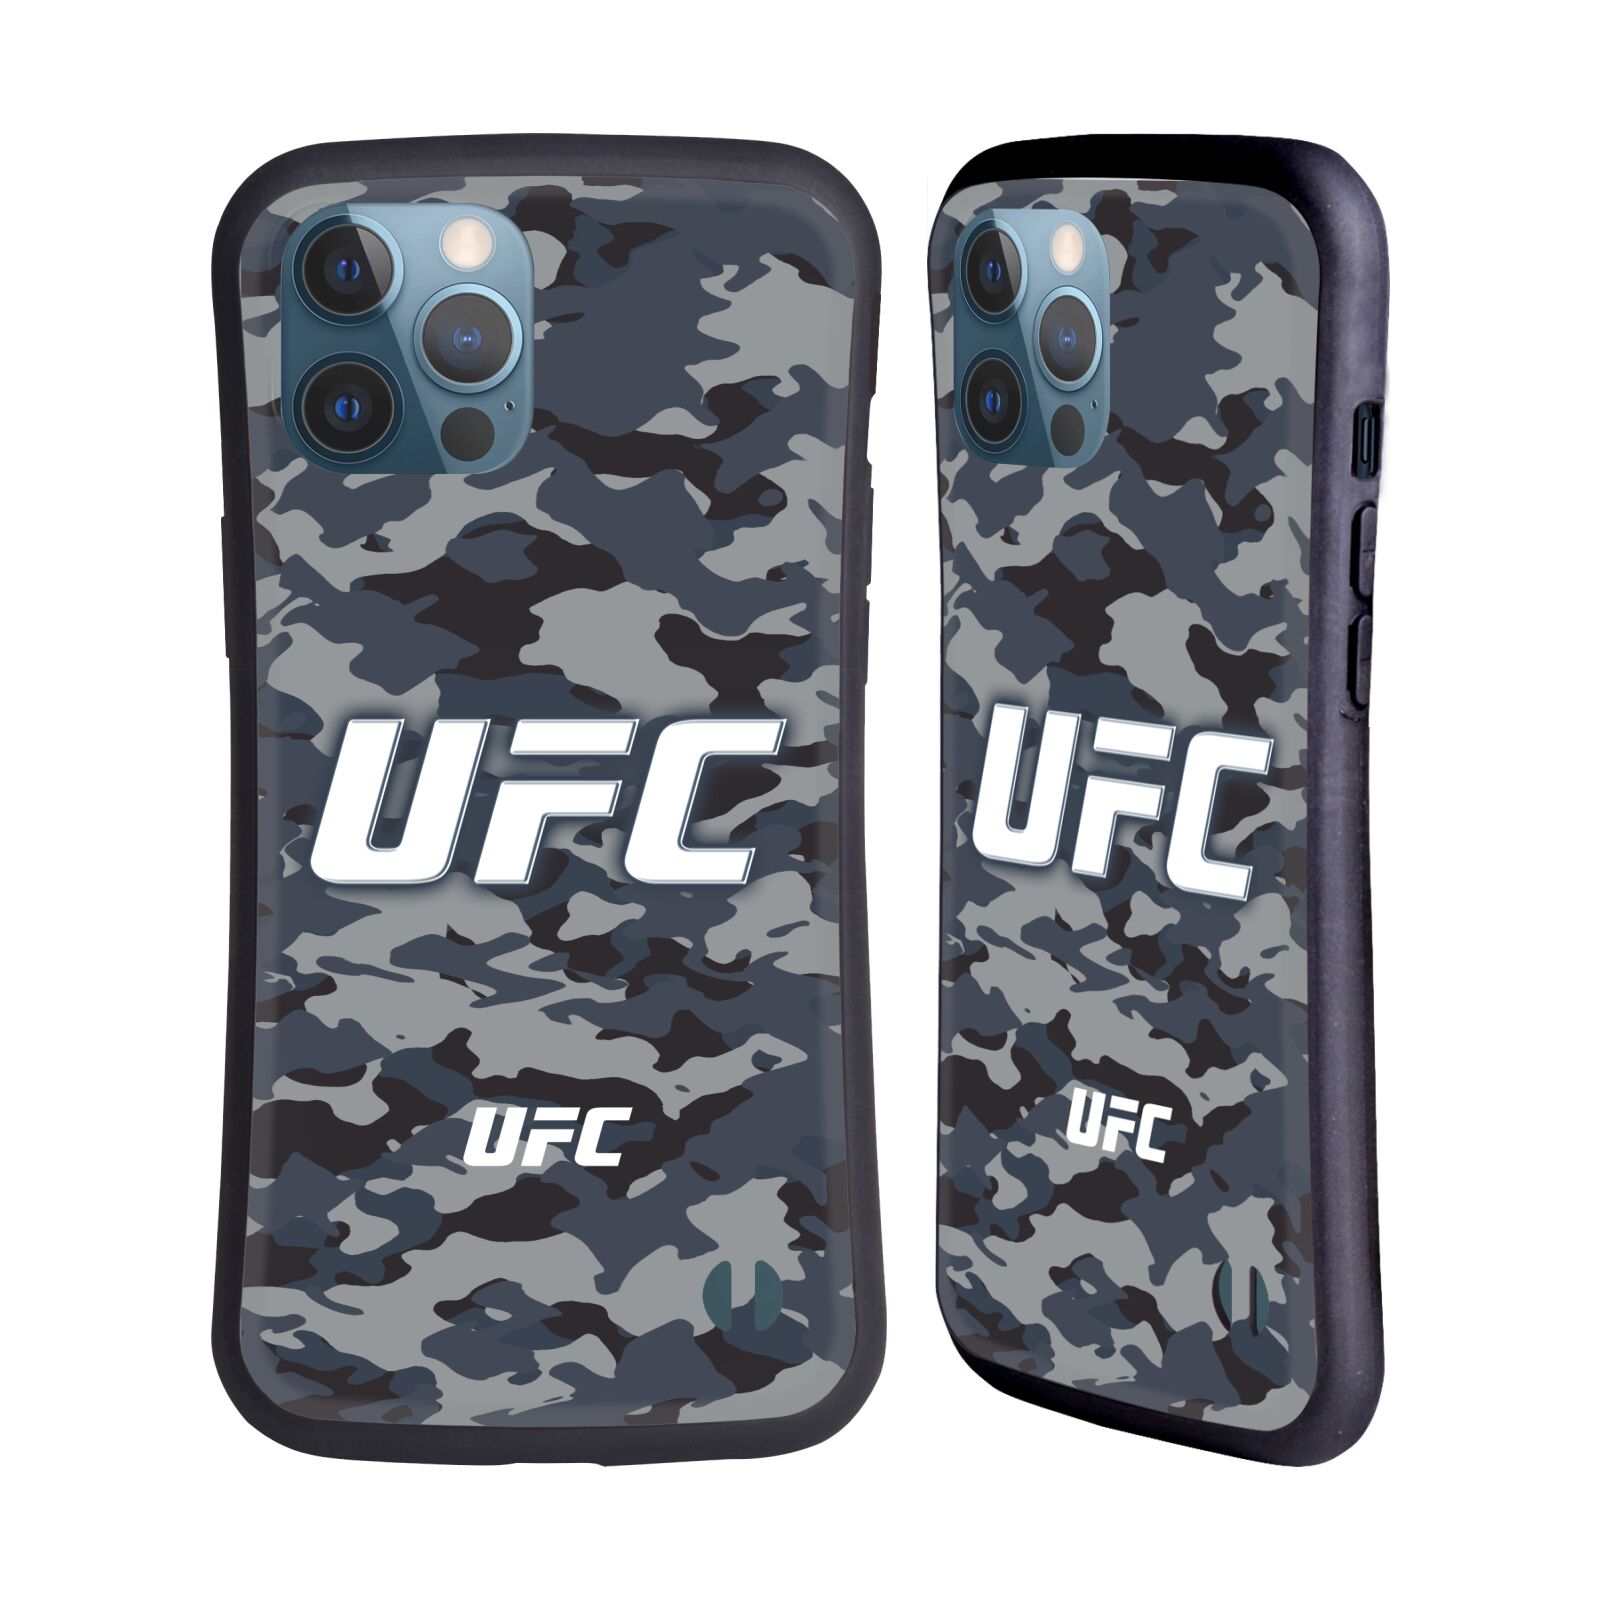 Odolný zadní obal pro mobil Apple iPhone 12 PRO MAX - HEAD CASE - UFC - kamufláž